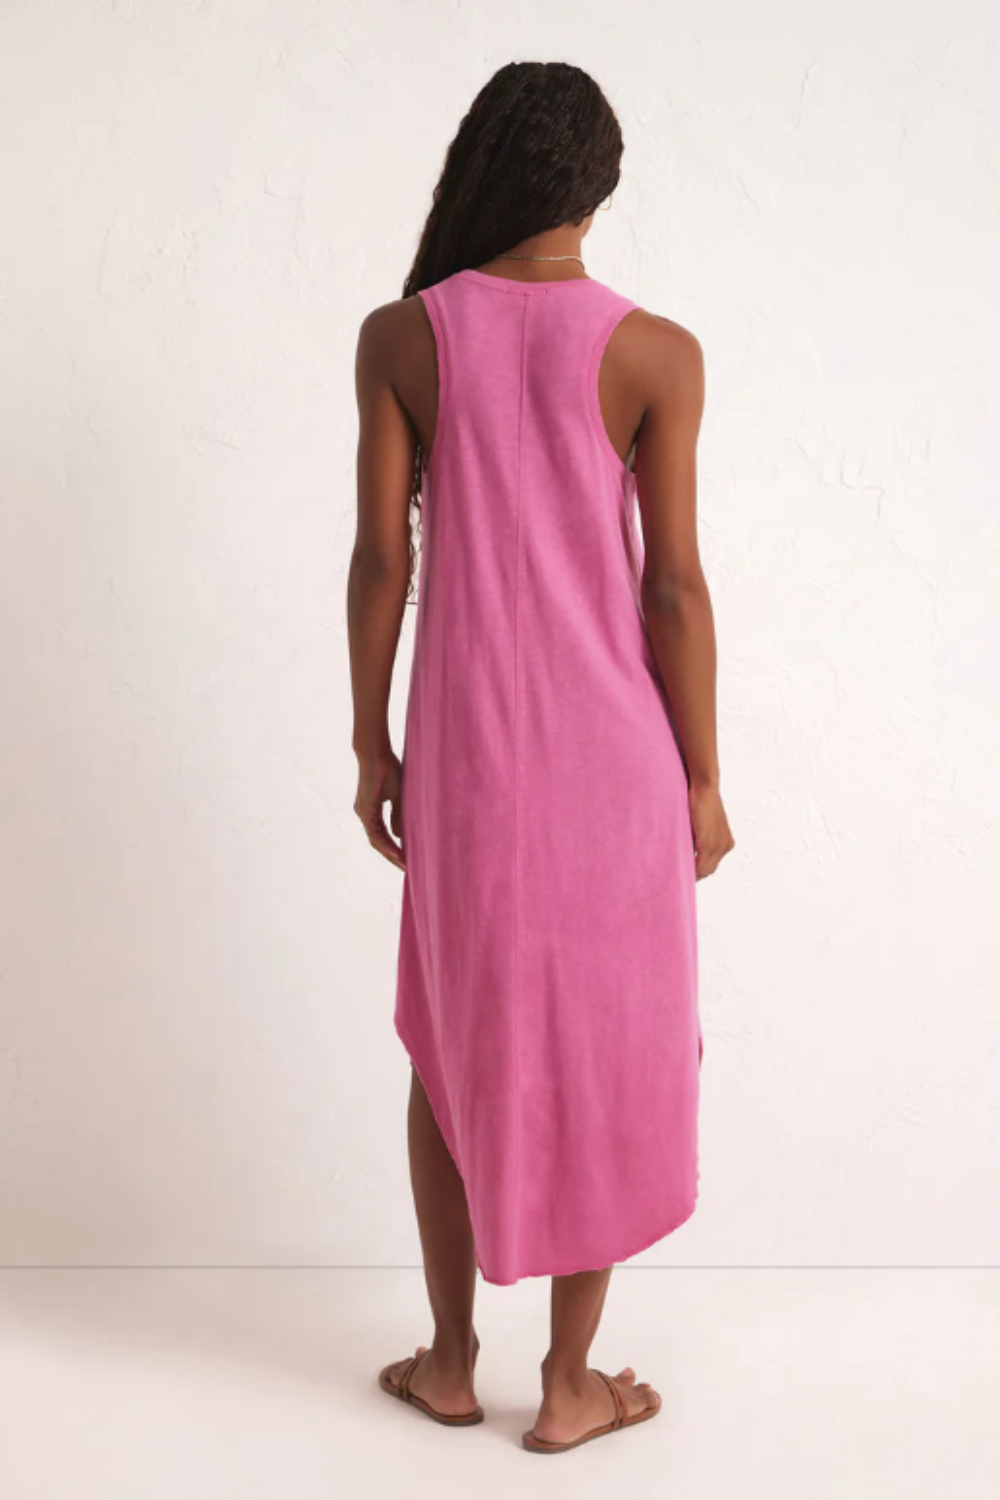 The Reverie Slub Dress in Heartbreaker Pink